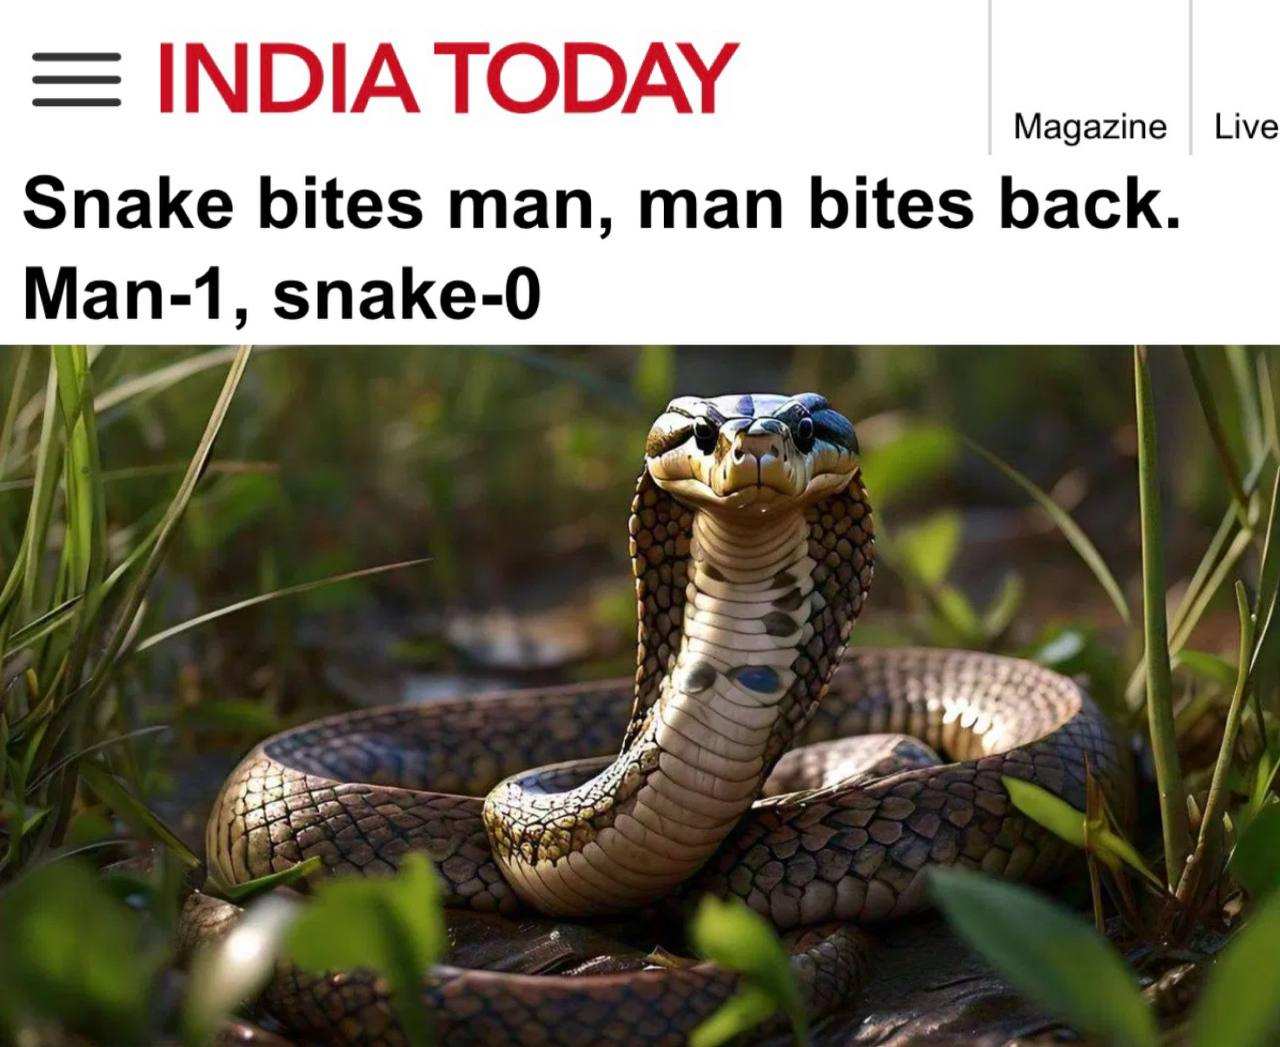 Змея кусает человека, человек кусает в ответ: мужчина в Индии загрыз ядовитую змею | Русская весна